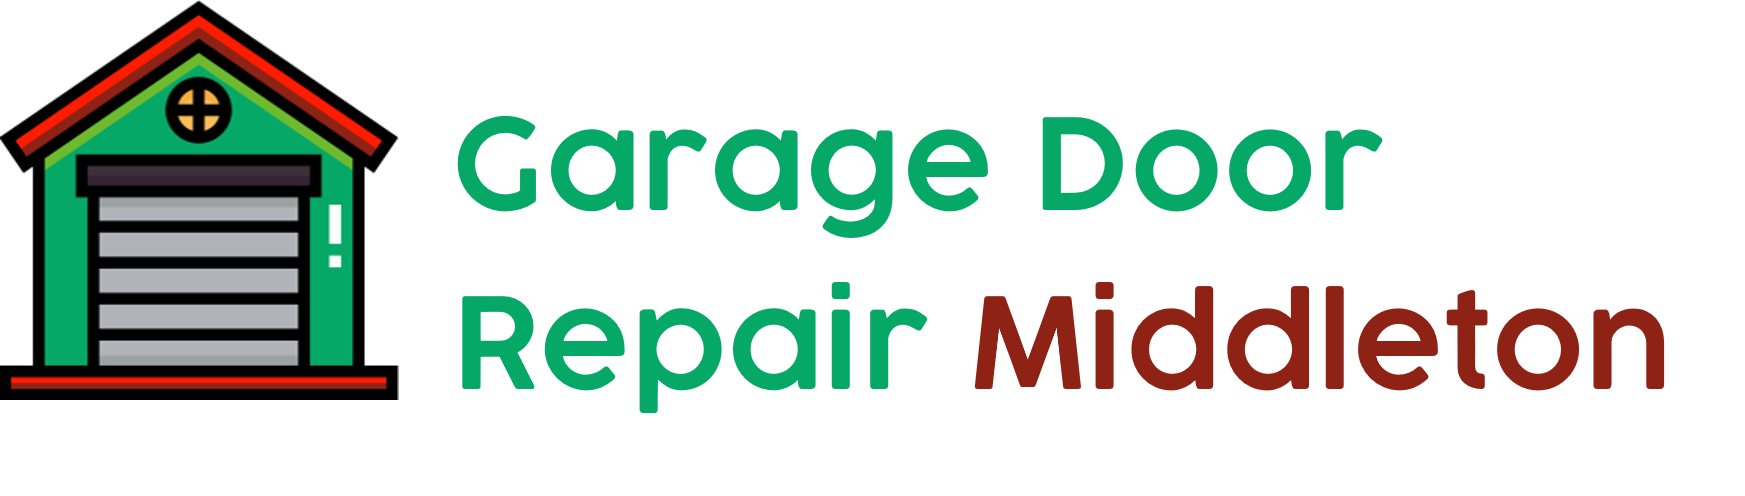 Garage Door Repair Middleton, Wisconsin Logo